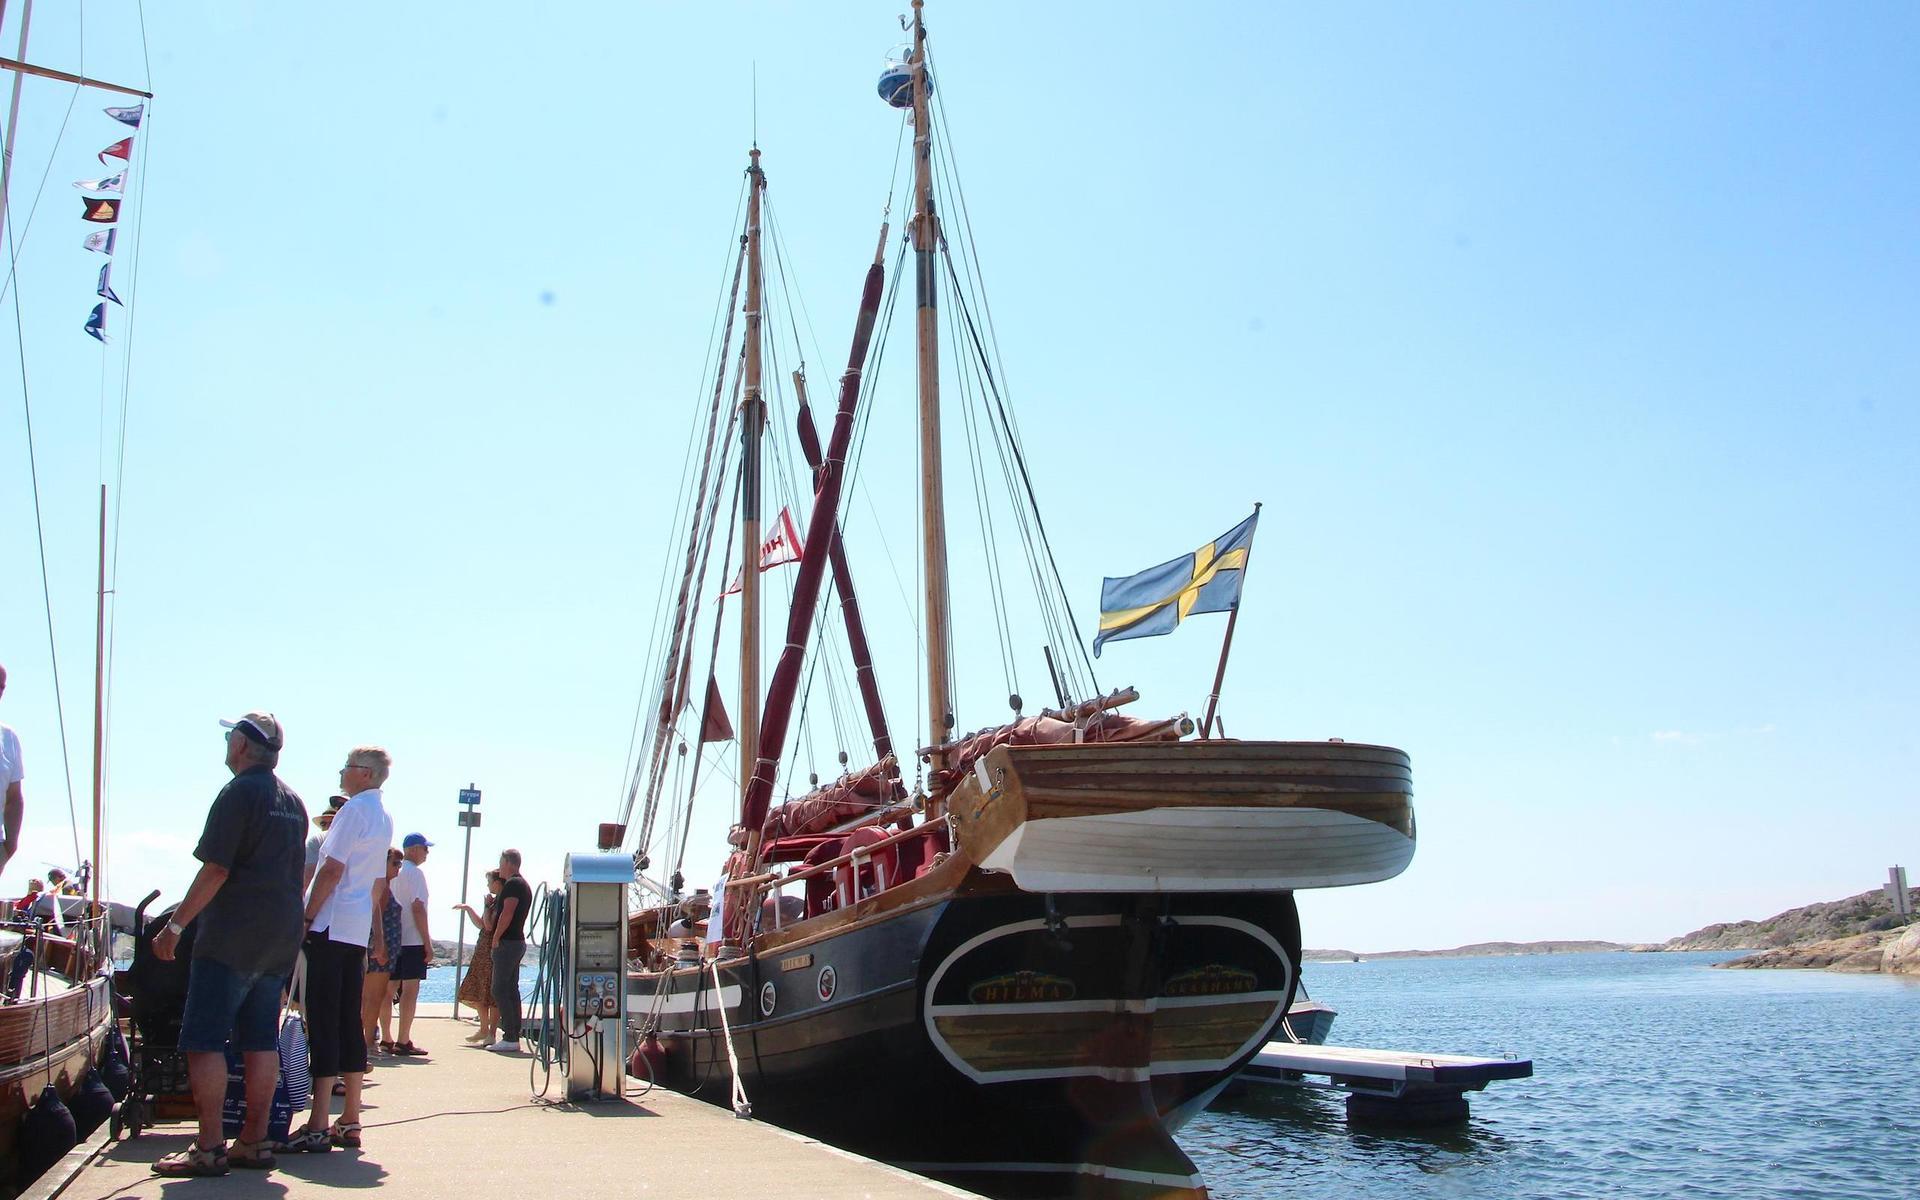 Träbåten, eller i det närmaste träfartyget, Hilma byggdes på Västerö Skibsvarv på Läsö 1978-1979. Den har numera Skärhamn som bas. Båten är 11,80 lång och rustad med en perkinsmotor på 175 hästar. 